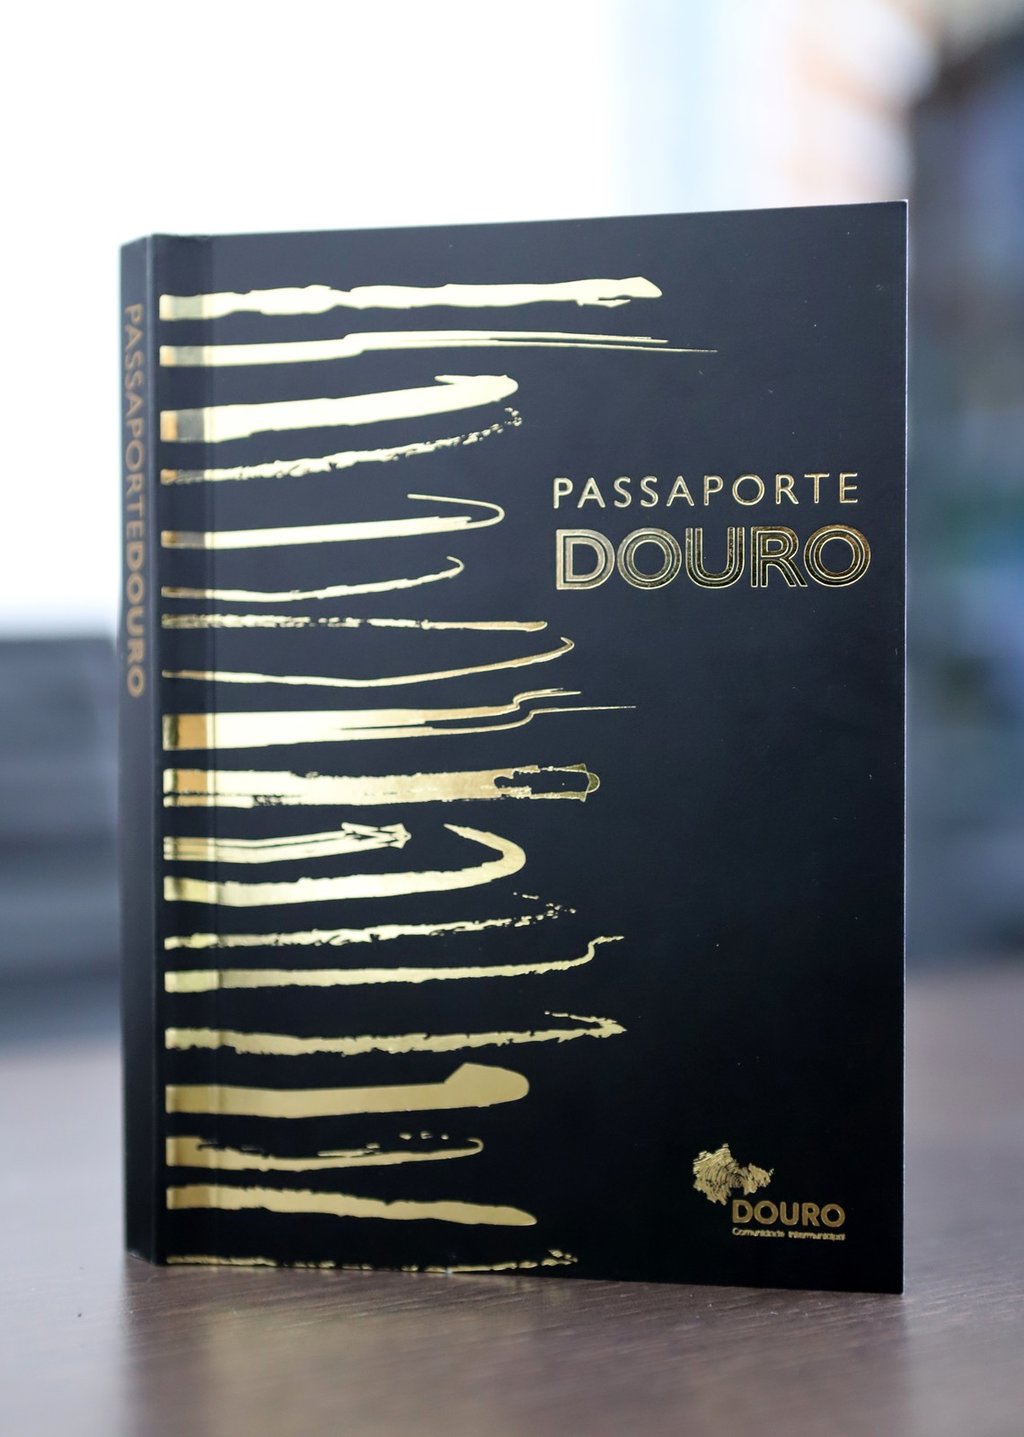 Passaporte Douro disponível no Posto de Turismo de Mesão Frio